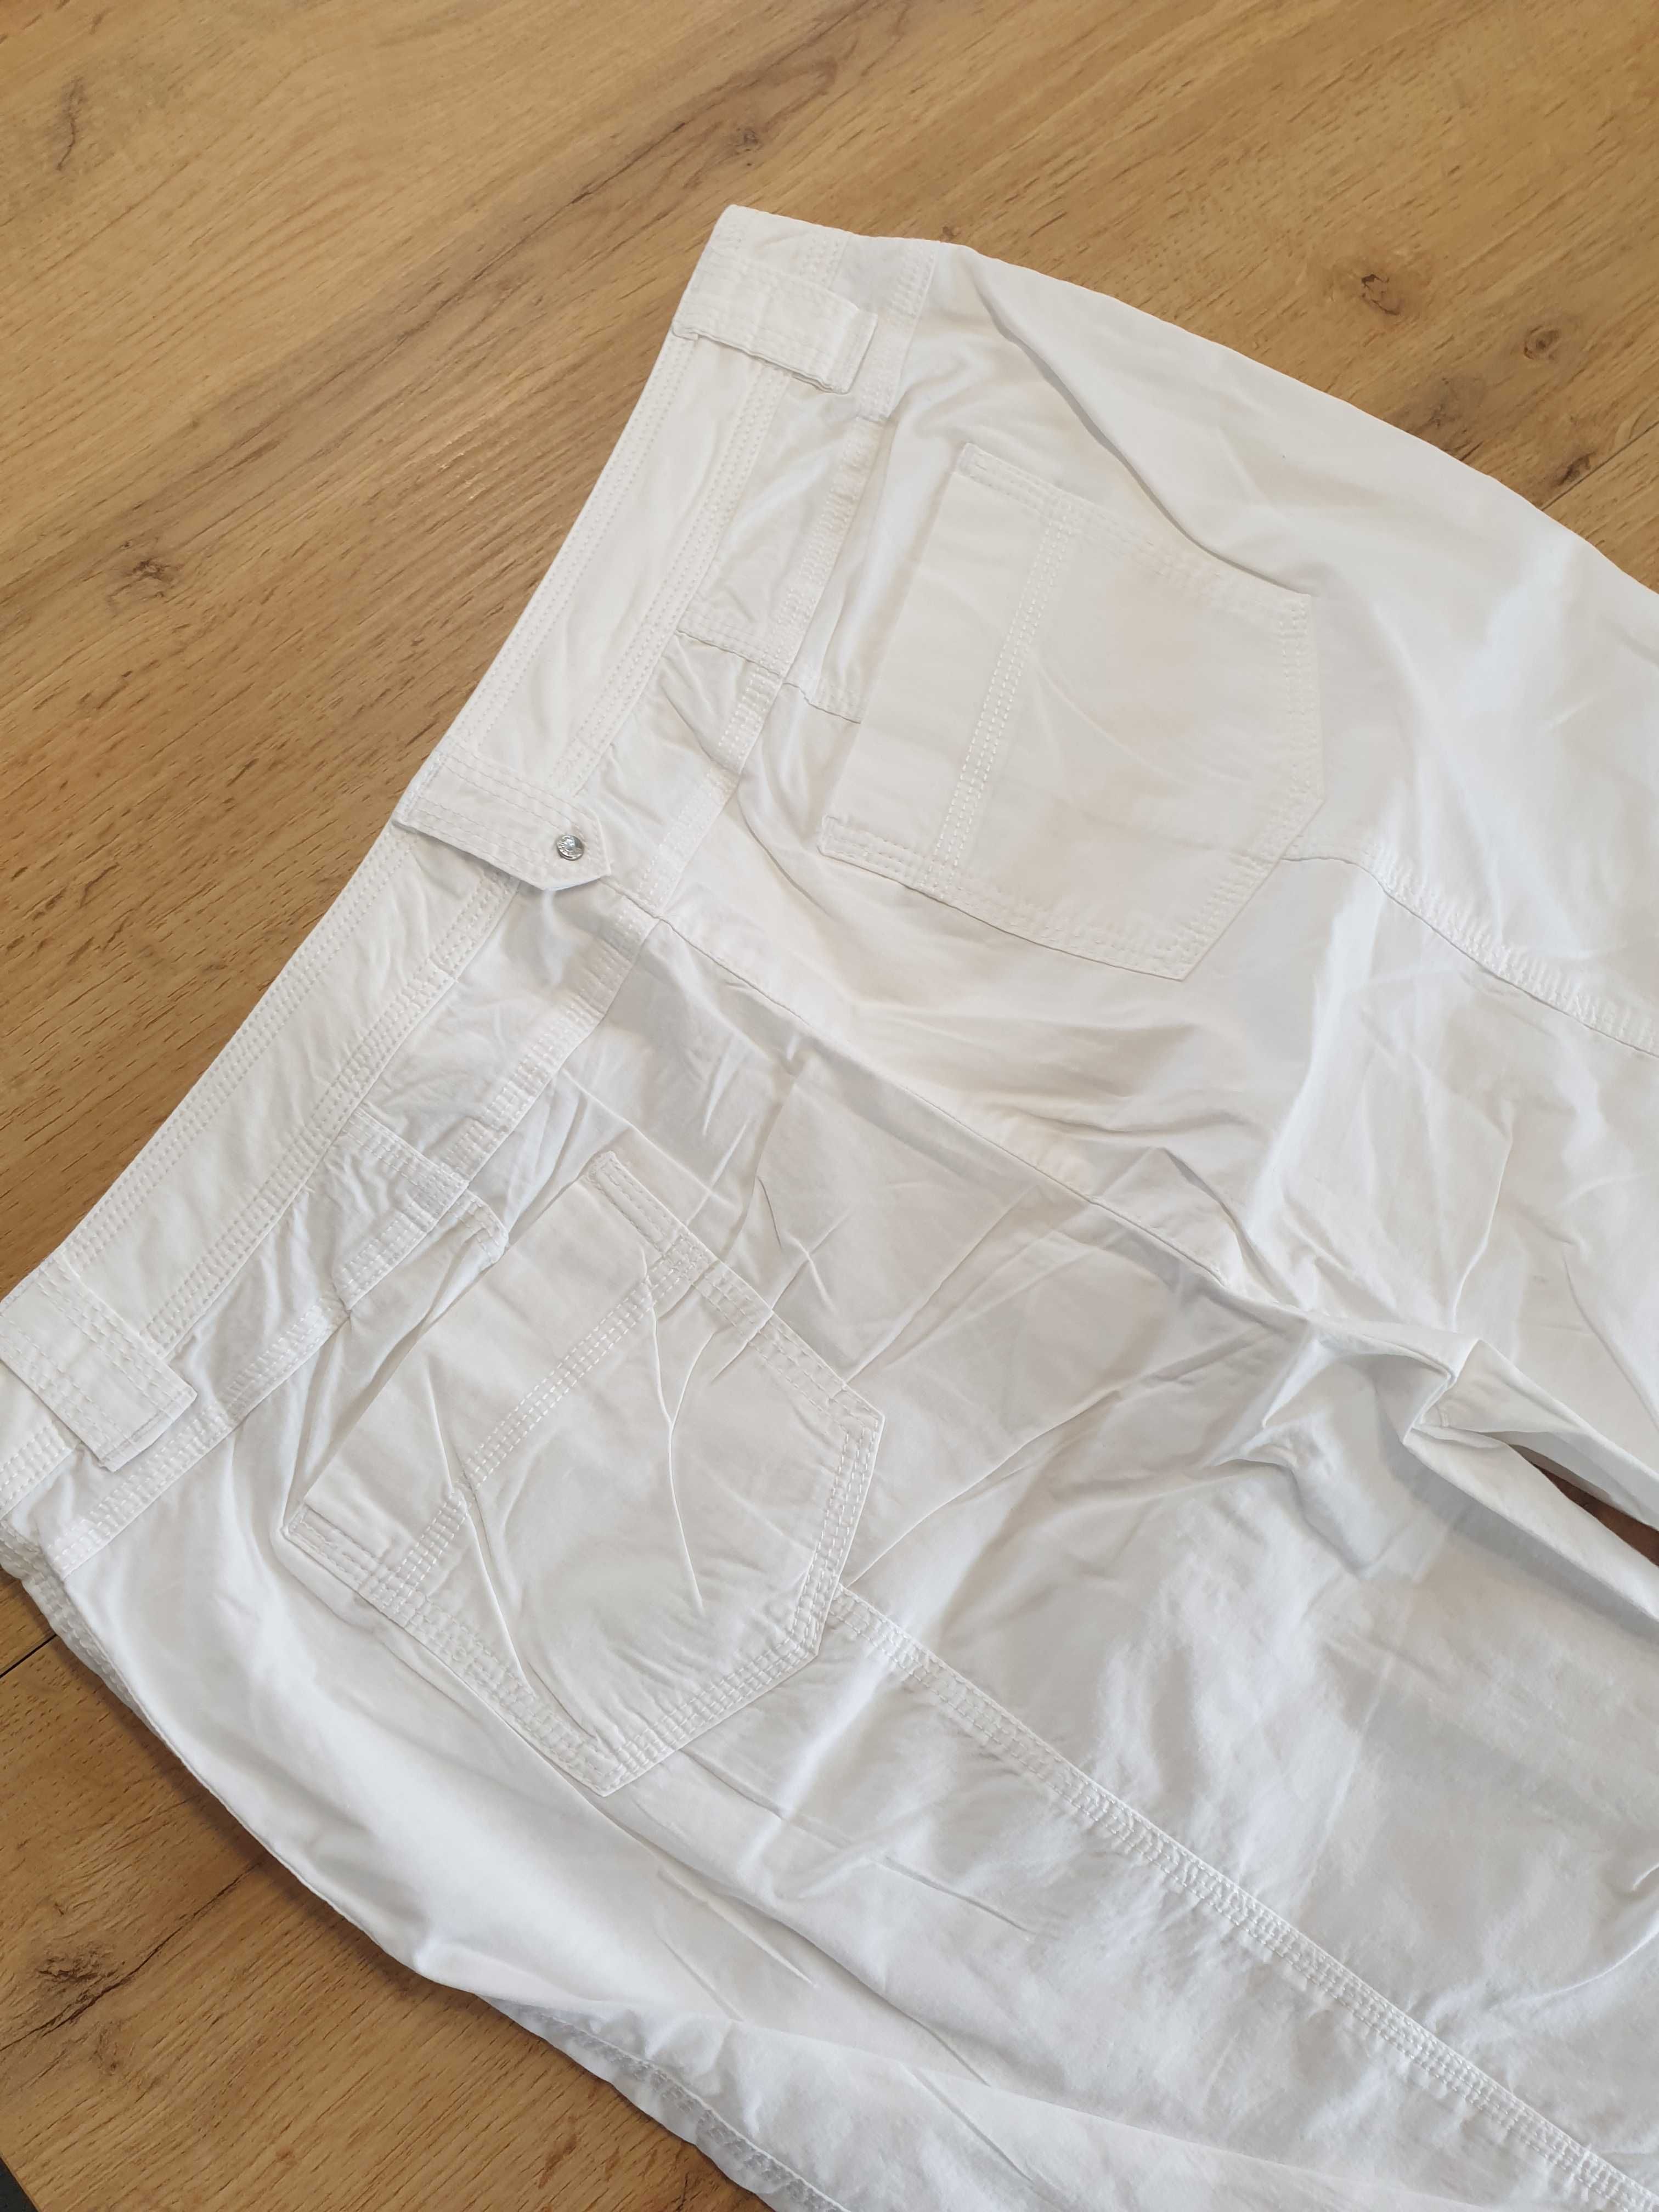 Białe spodnie 3/4, rybaczki, 98 % bawełna, rozmiar XL, 42